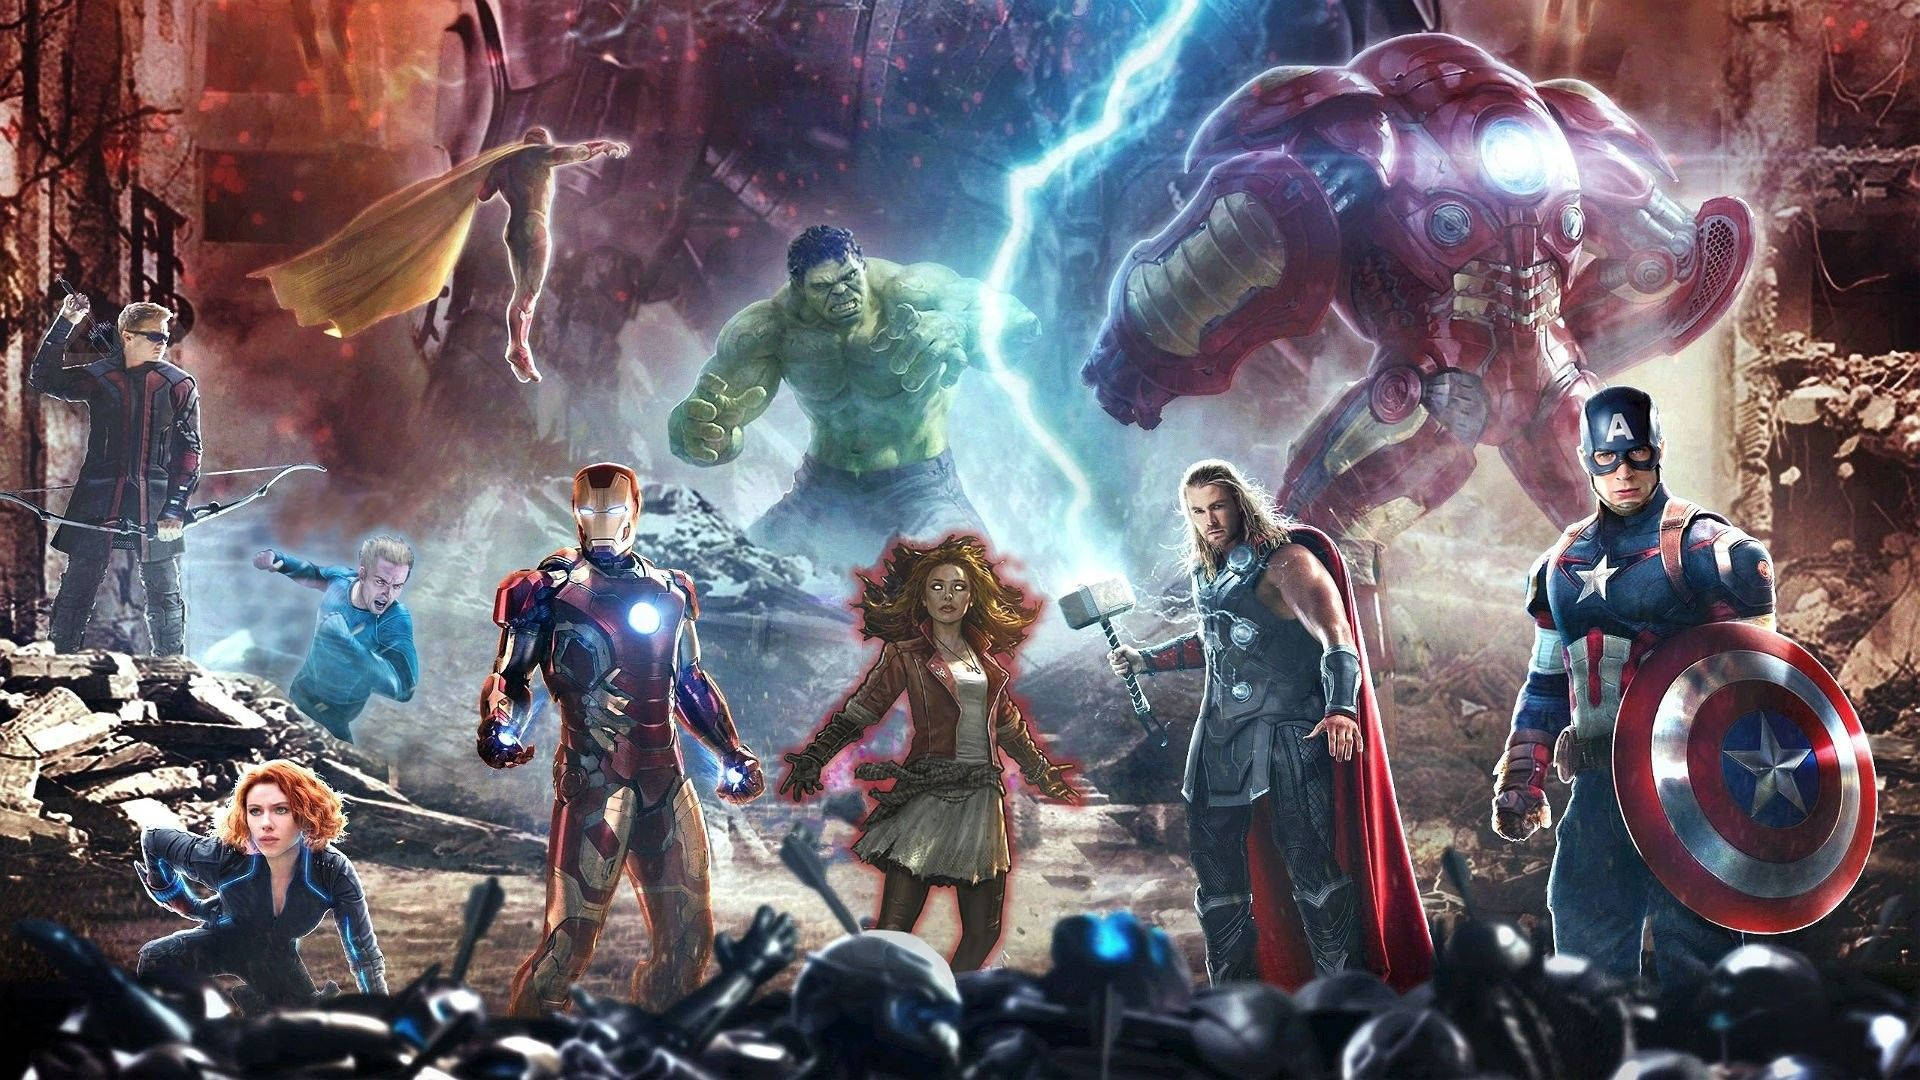 Avengersphotoshopped-poster Für Den Desktop Wallpaper